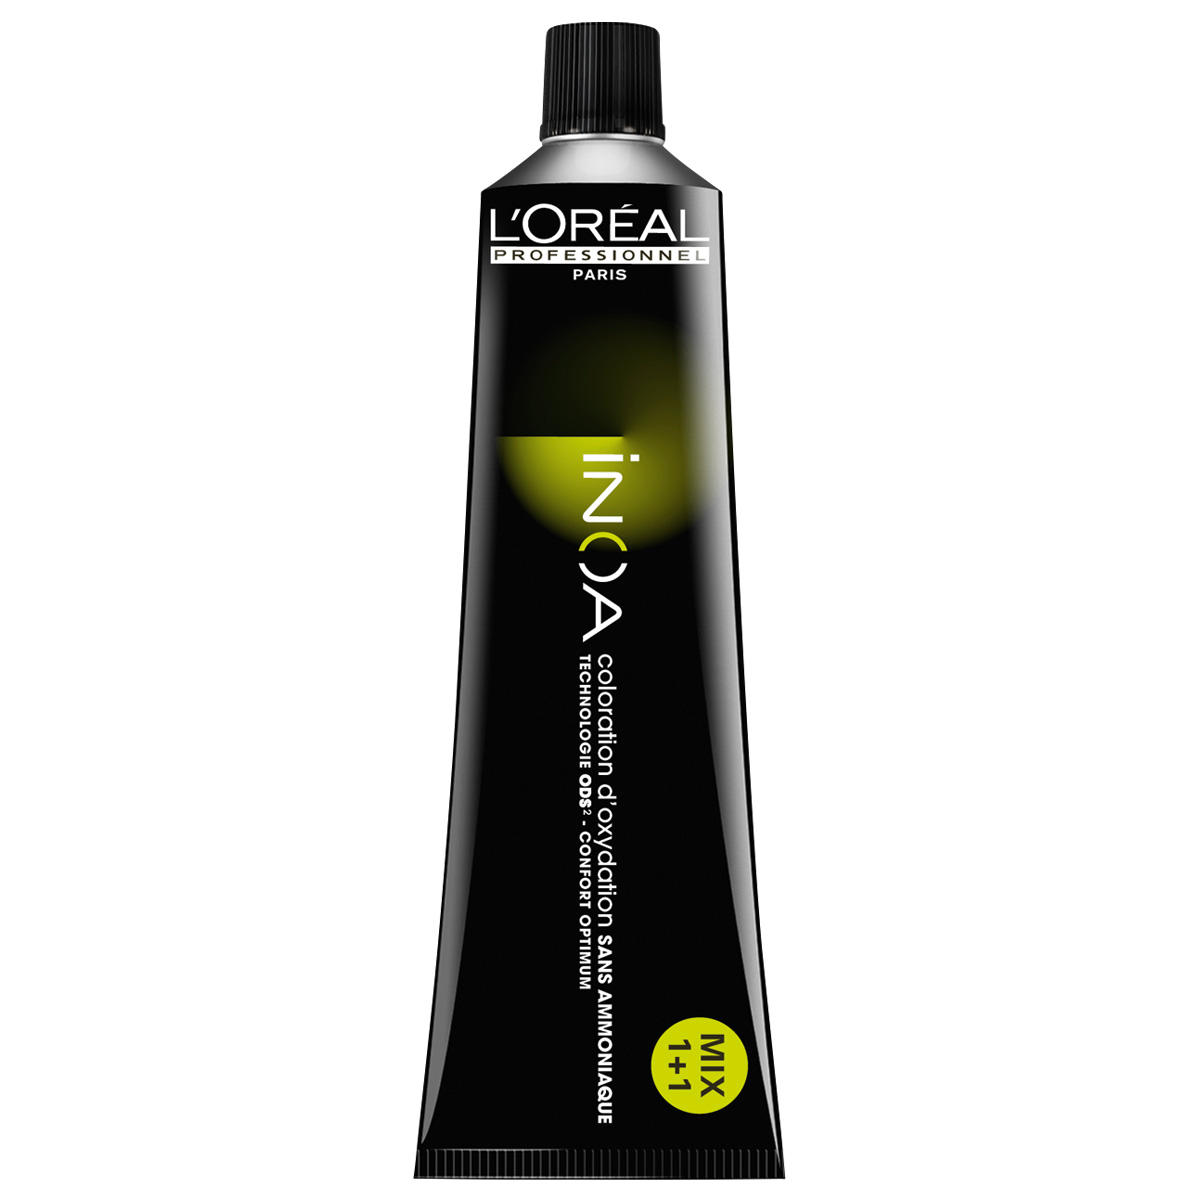 L'Oréal Professionnel Paris Coloration Clear, Tube 60 ml